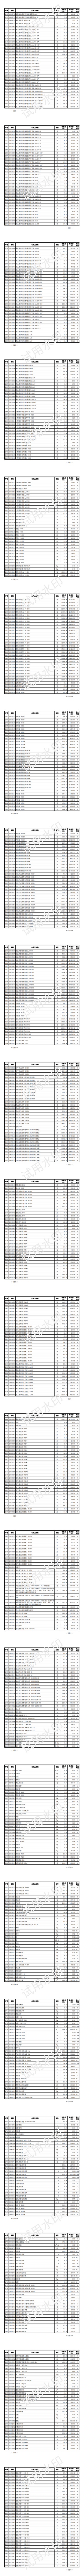 上海水务工程价格信息（2023年4月第三期）_05.png